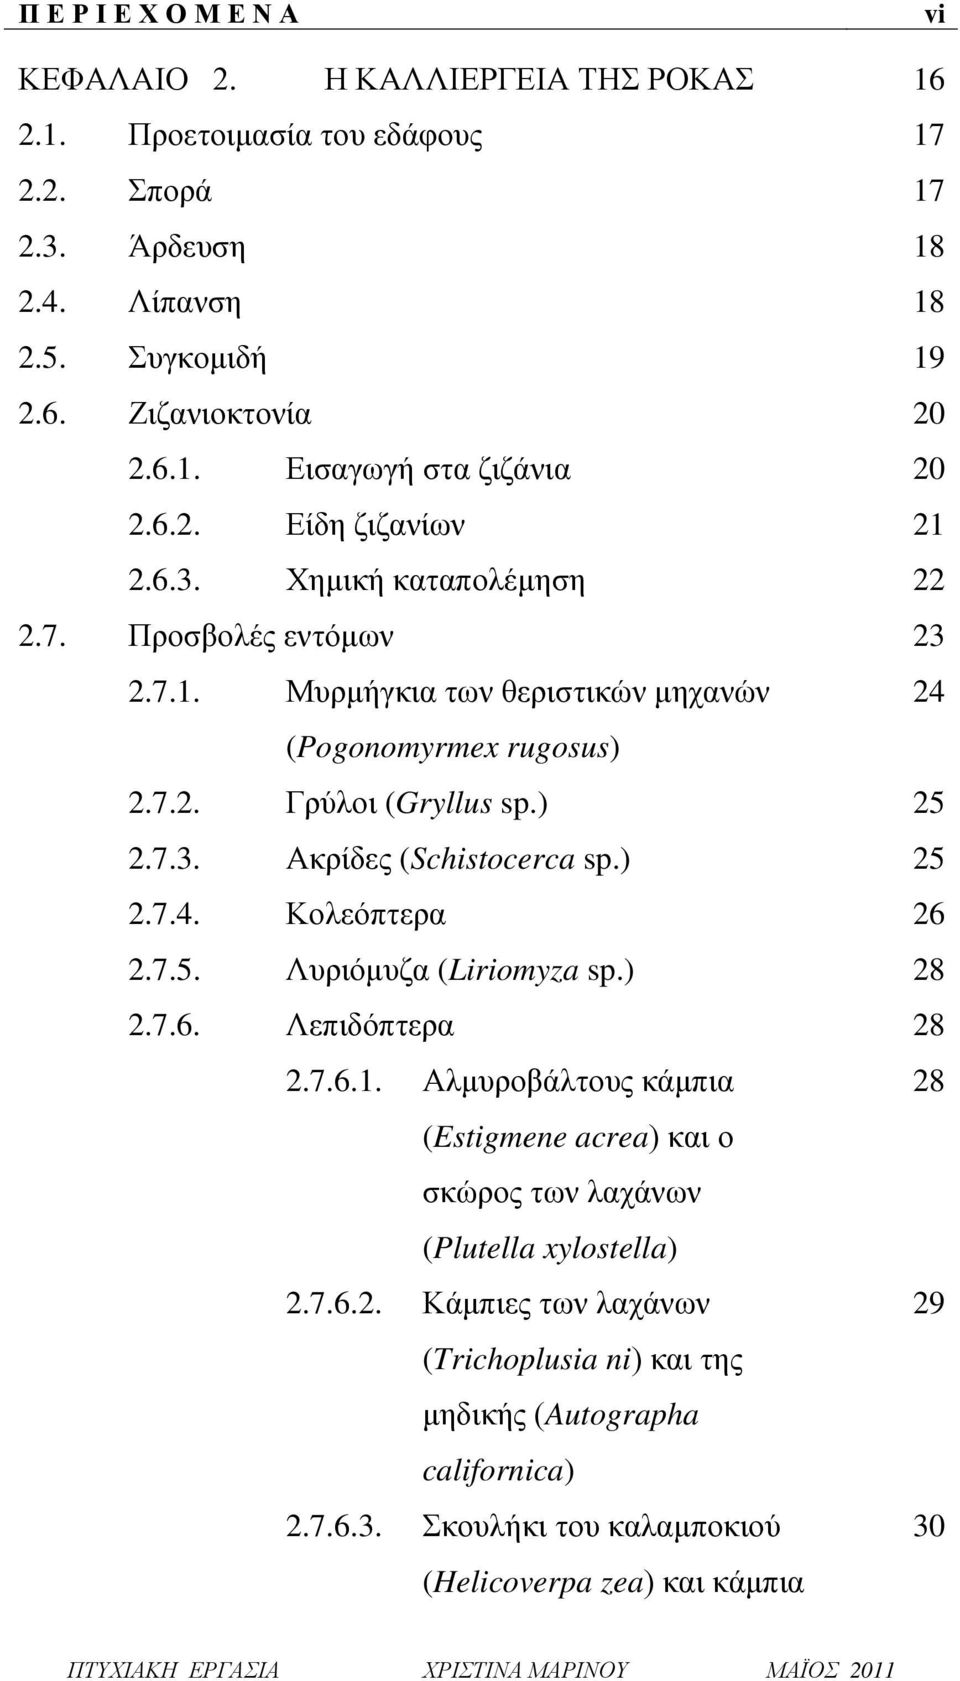 ) 25 2.7.4. Κολεόπτερα 26 2.7.5. Λυριόμυζα (Liriomyza sp.) 28 2.7.6. Λεπιδόπτερα 28 2.7.6.1. Αλμυροβάλτους κάμπια 28 (Estigmene acrea) και ο σκώρος των λαχάνων (Plutella xylostella) 2.7.6.2. Κάμπιες των λαχάνων 29 (Trichoplusia ni) και της μηδικής (Autographa californica) 2.